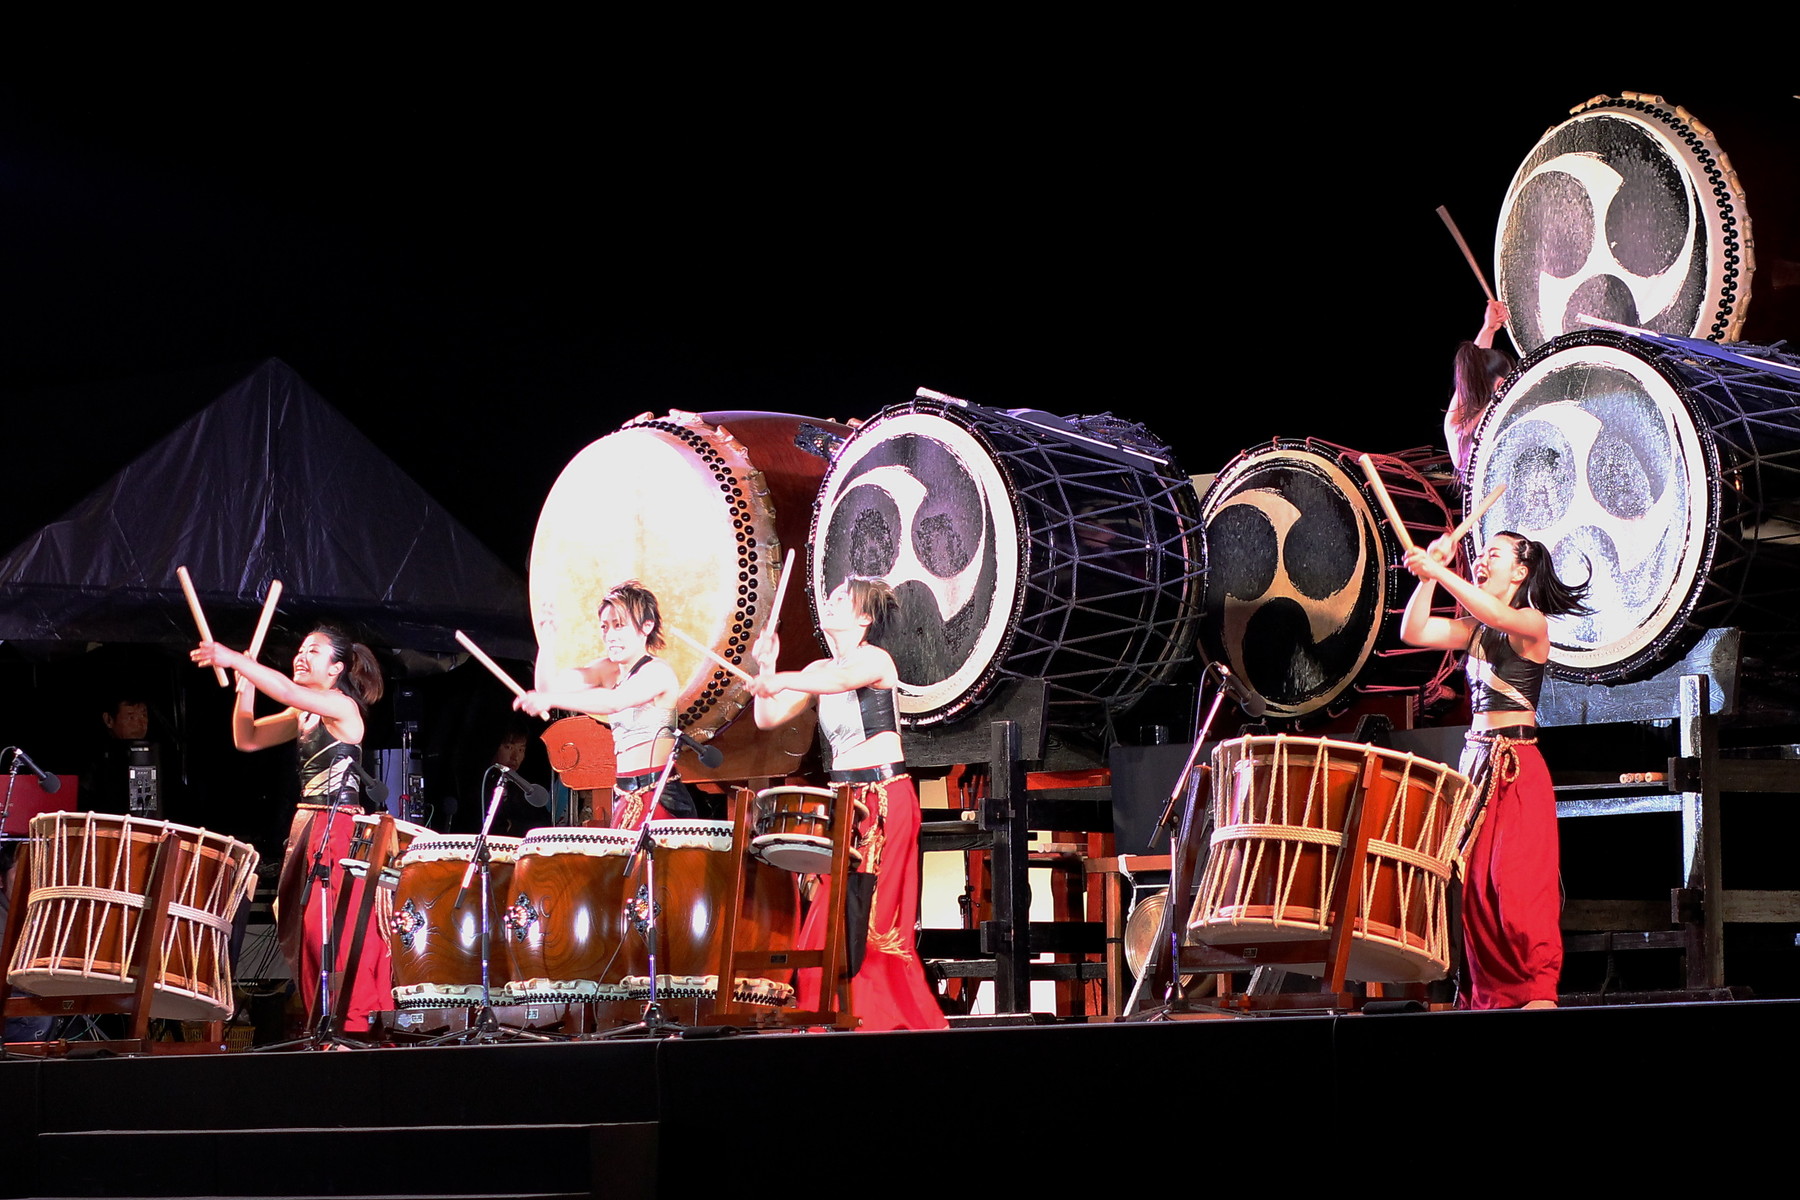 奈良 大立山祭りのねぶた風山車あんど和太鼓 ちょろろっとそれゆけ あるーりんぐぼいす